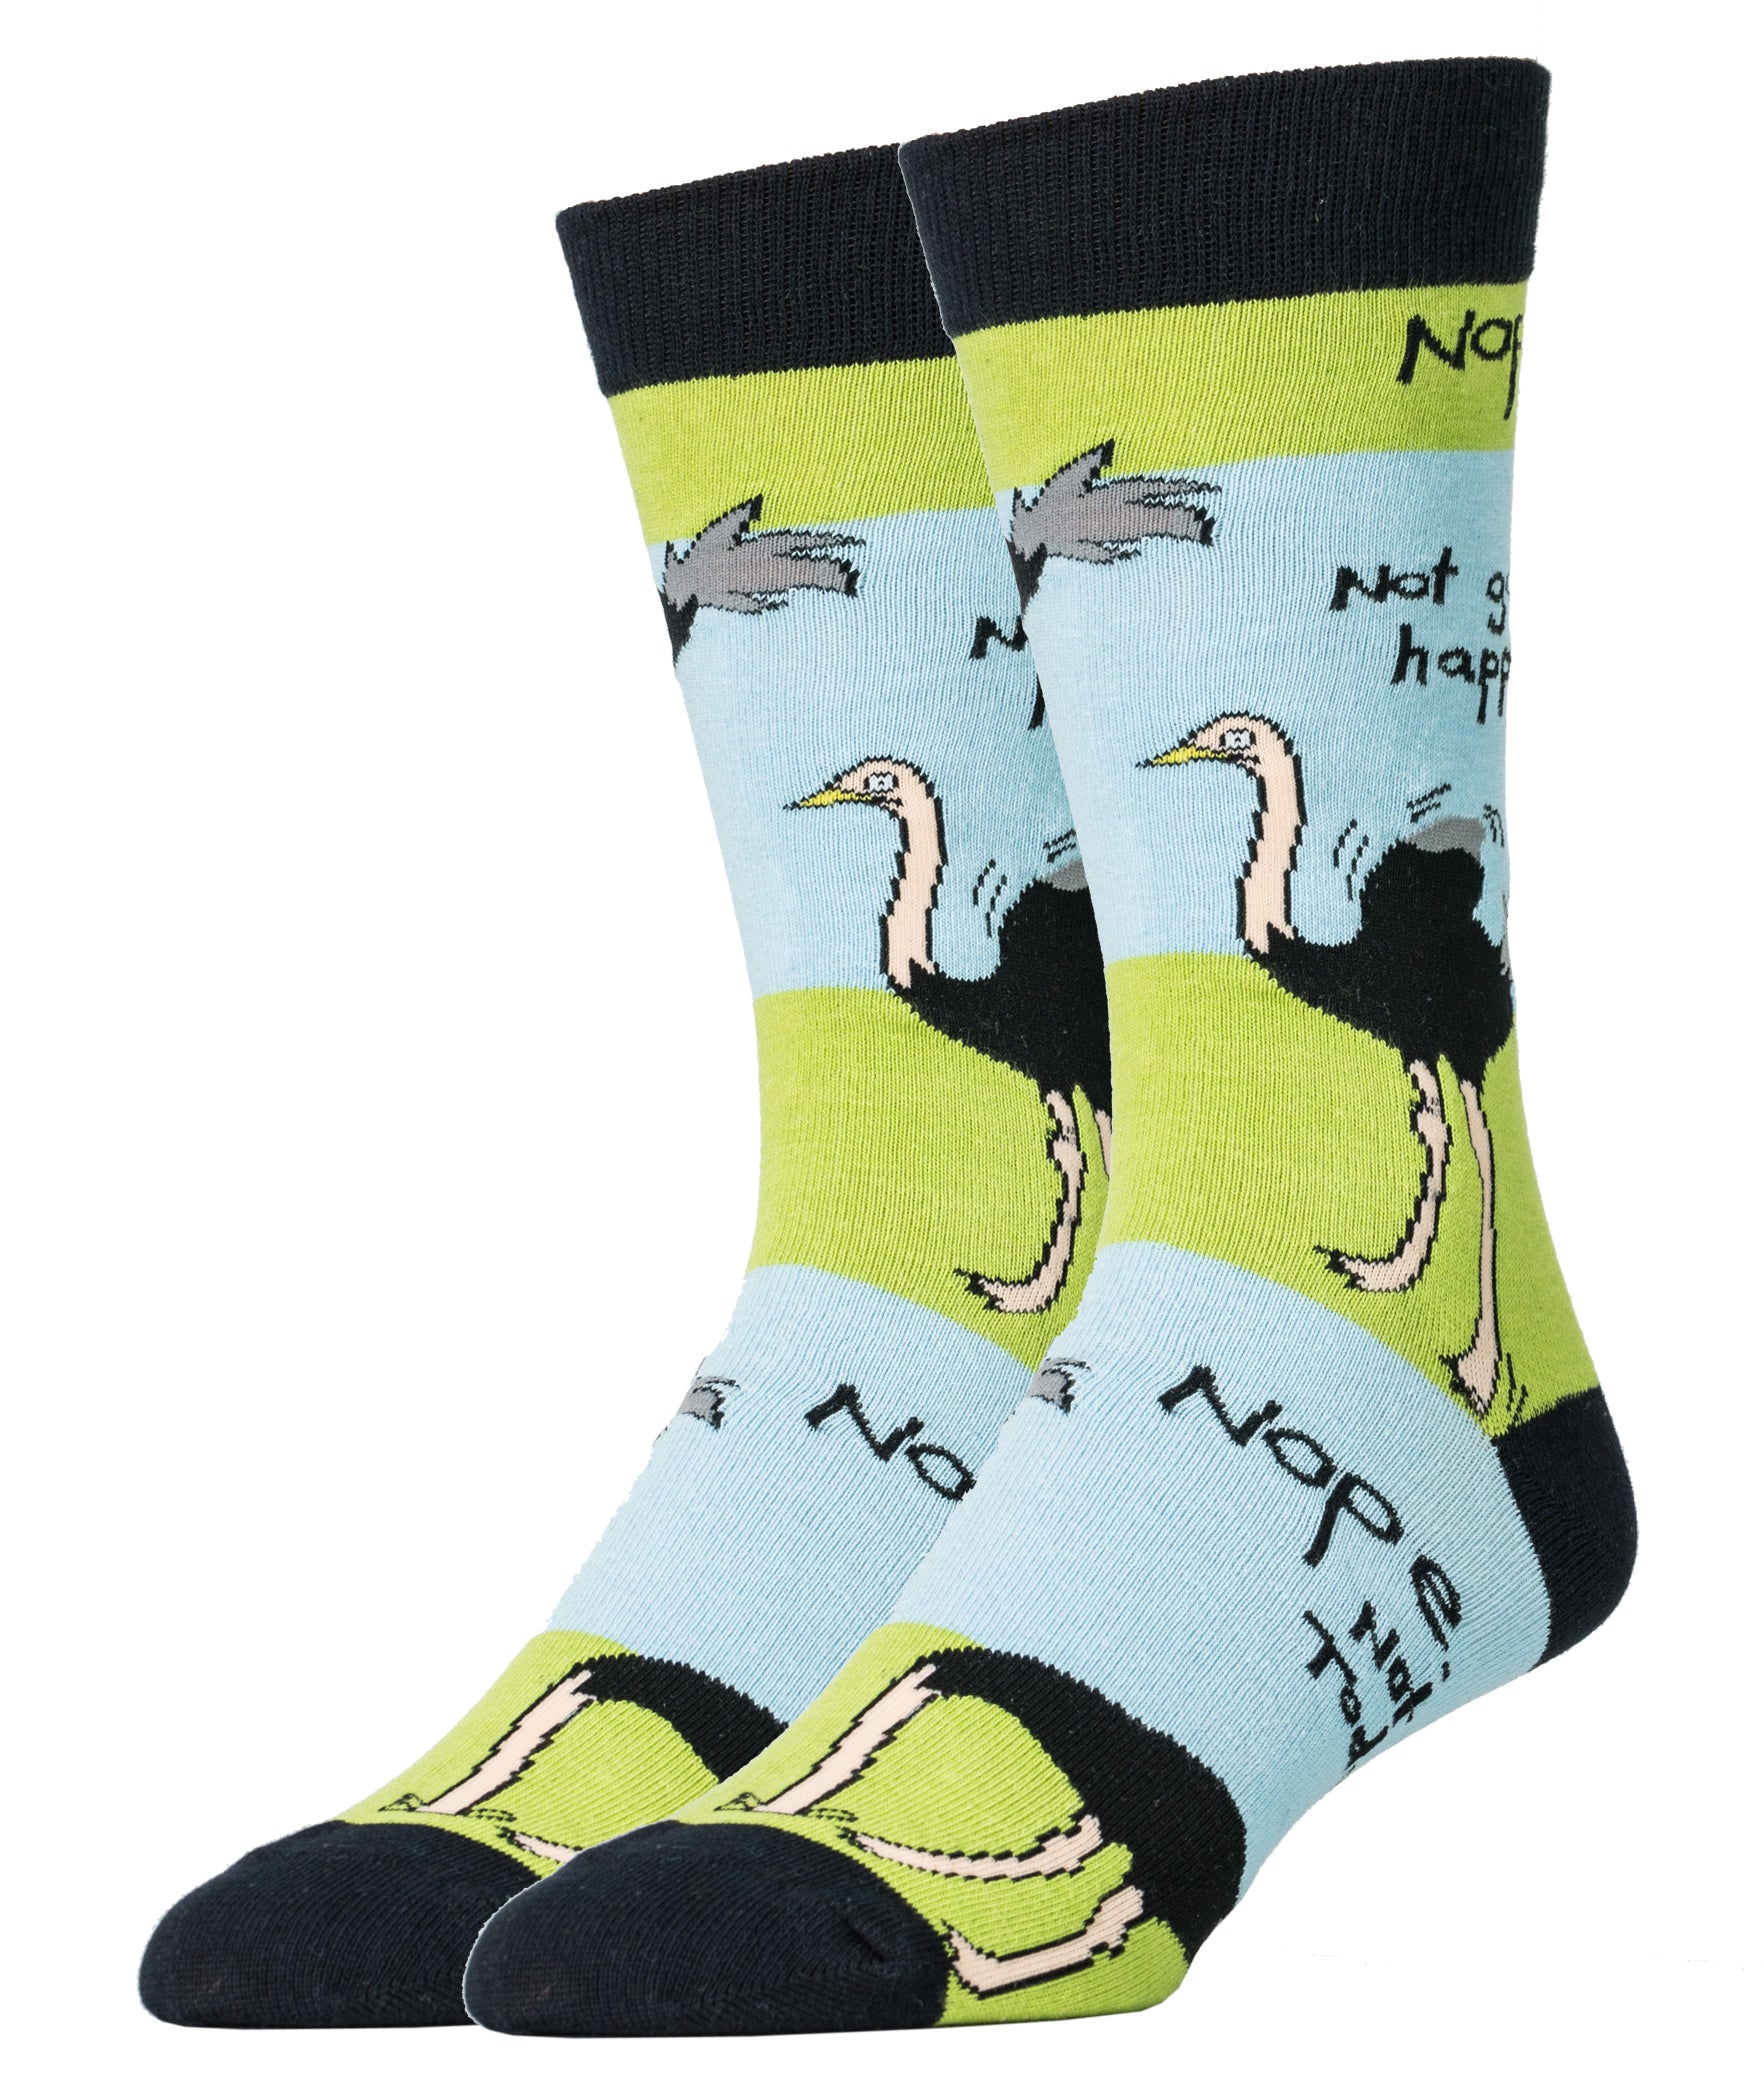 Not Today Socks | Animal Crew Socks For Men